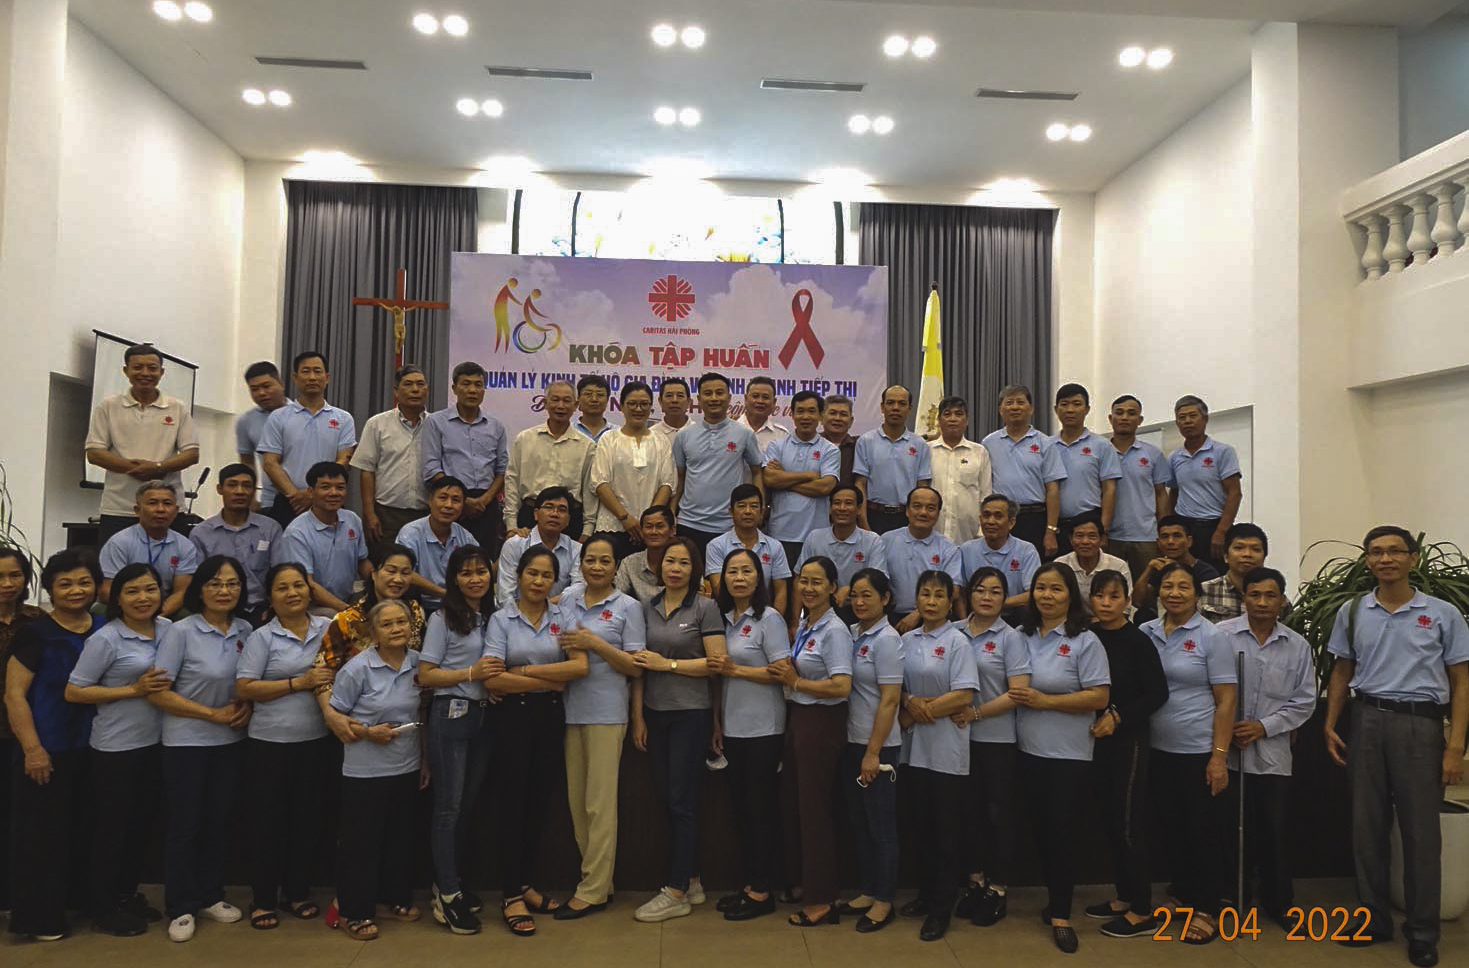 Caritas Hải Phòng: Khóa tập huấn “Quản lý kinh tế hộ gia đình và kinh doanh tiếp thị dành cho NKT, NCH và cộng tác viên”